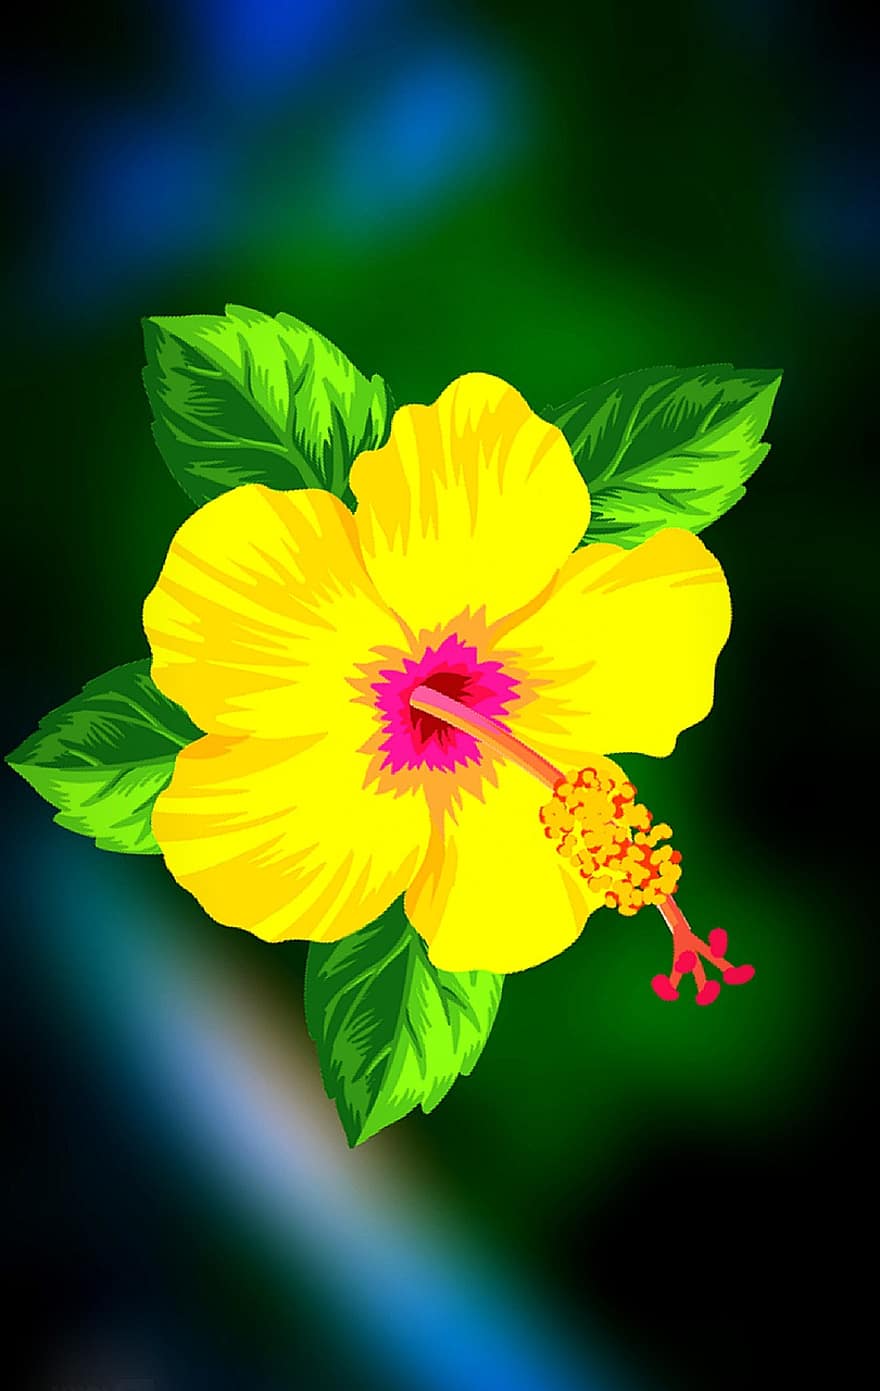 ibisco, fiore, pianta, pistillo, stame, petali, fiore giallo, fioritura, giardino, natura